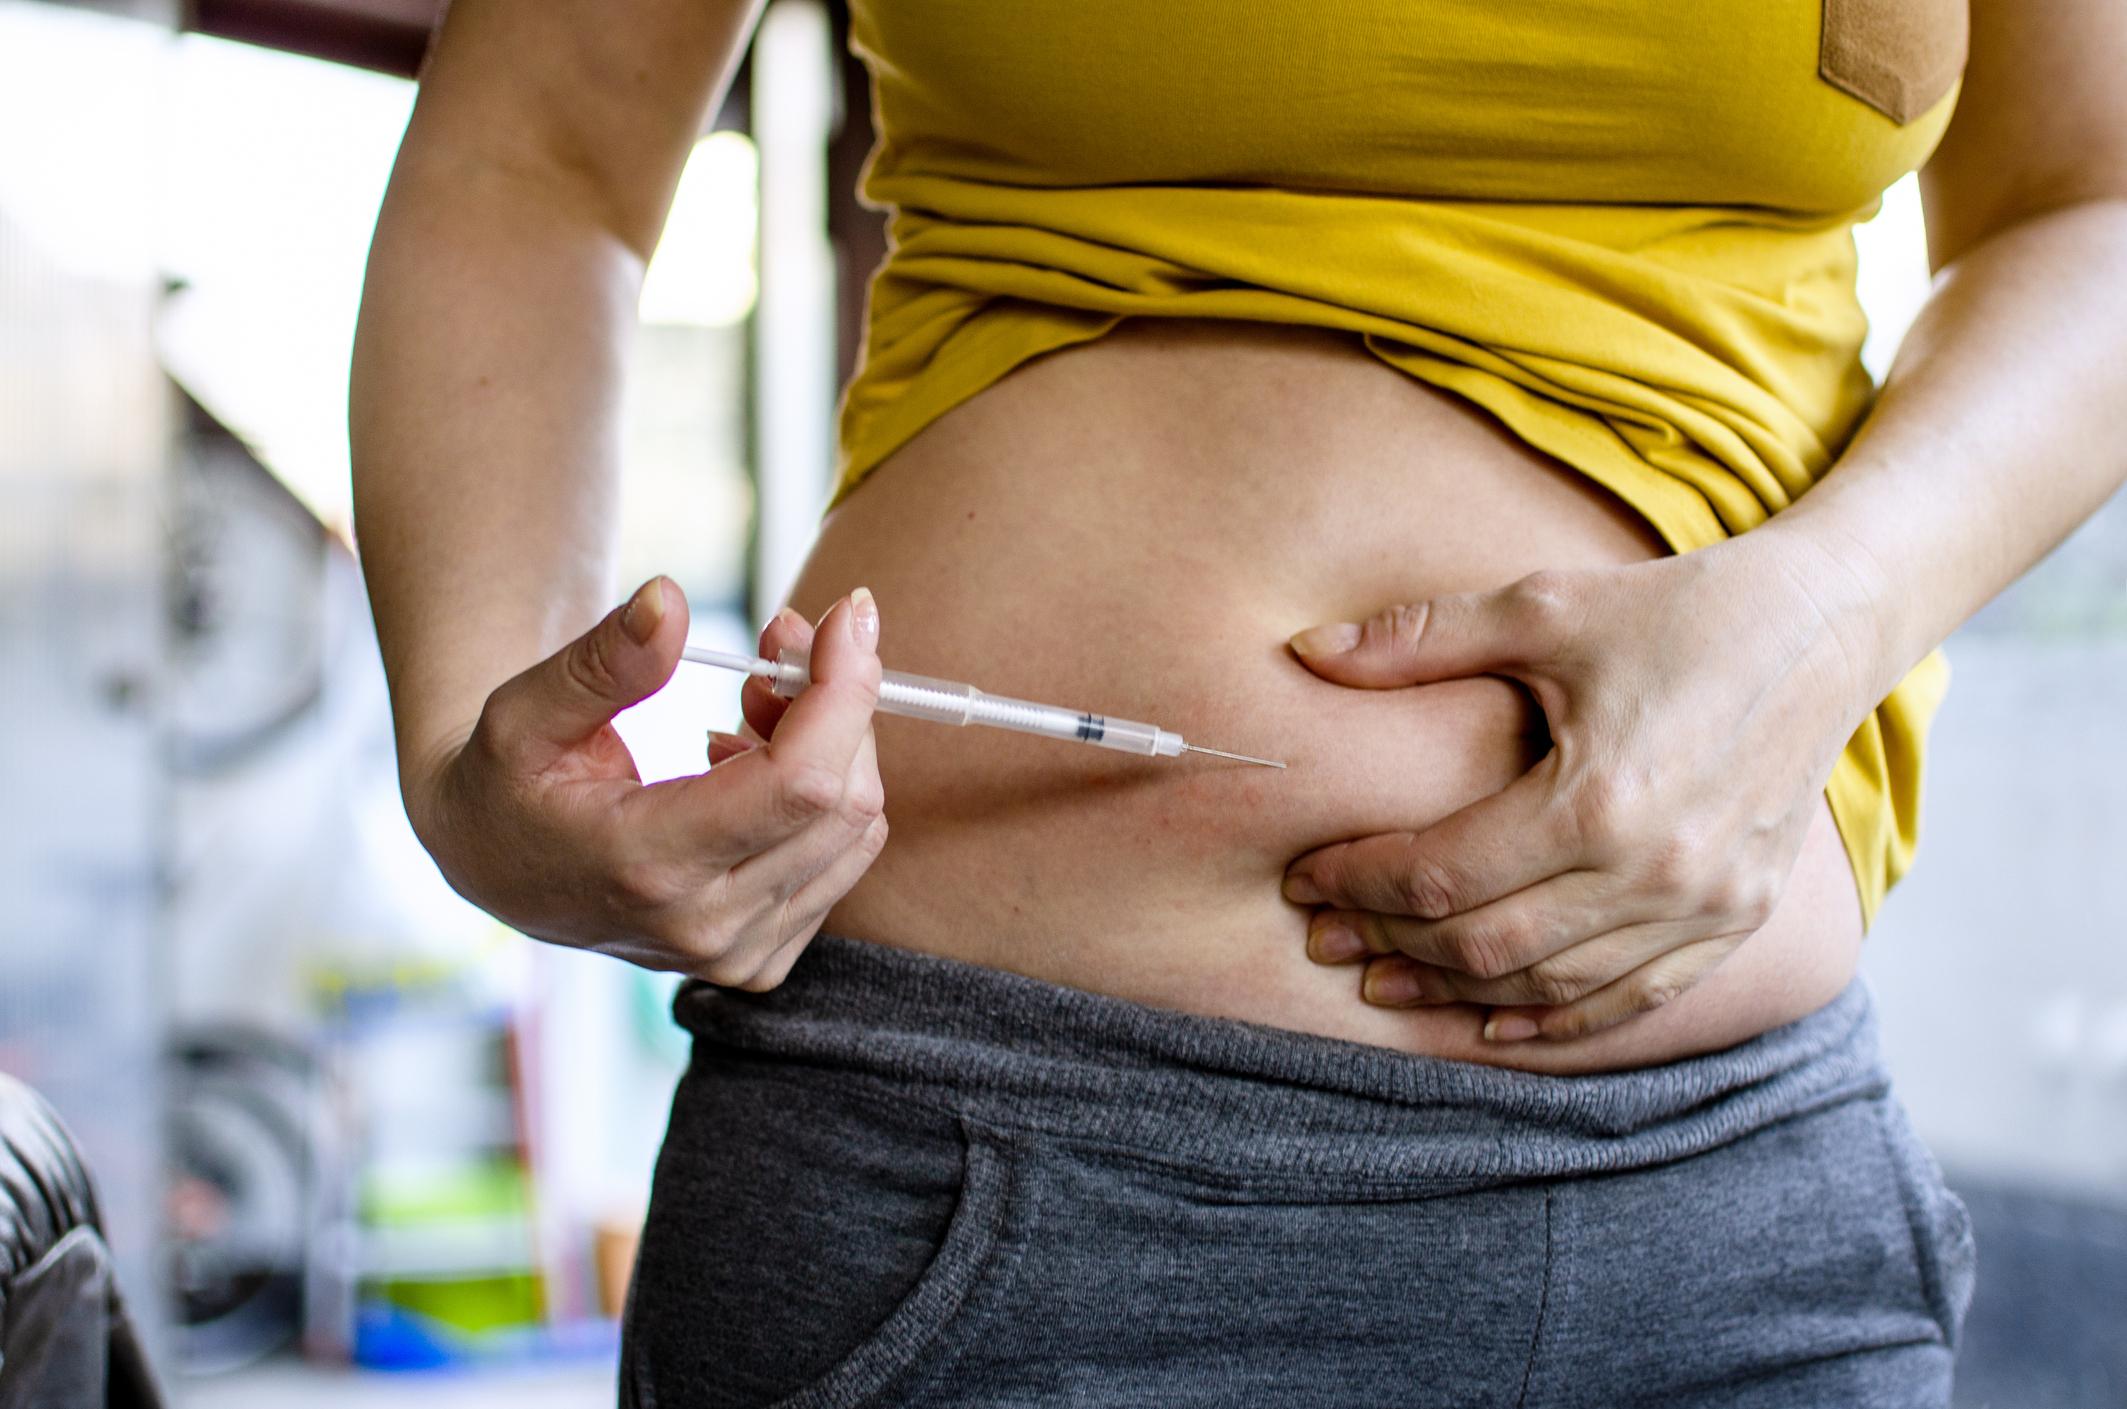  AVC : les traitements de fertilité augmenteraient vos risques